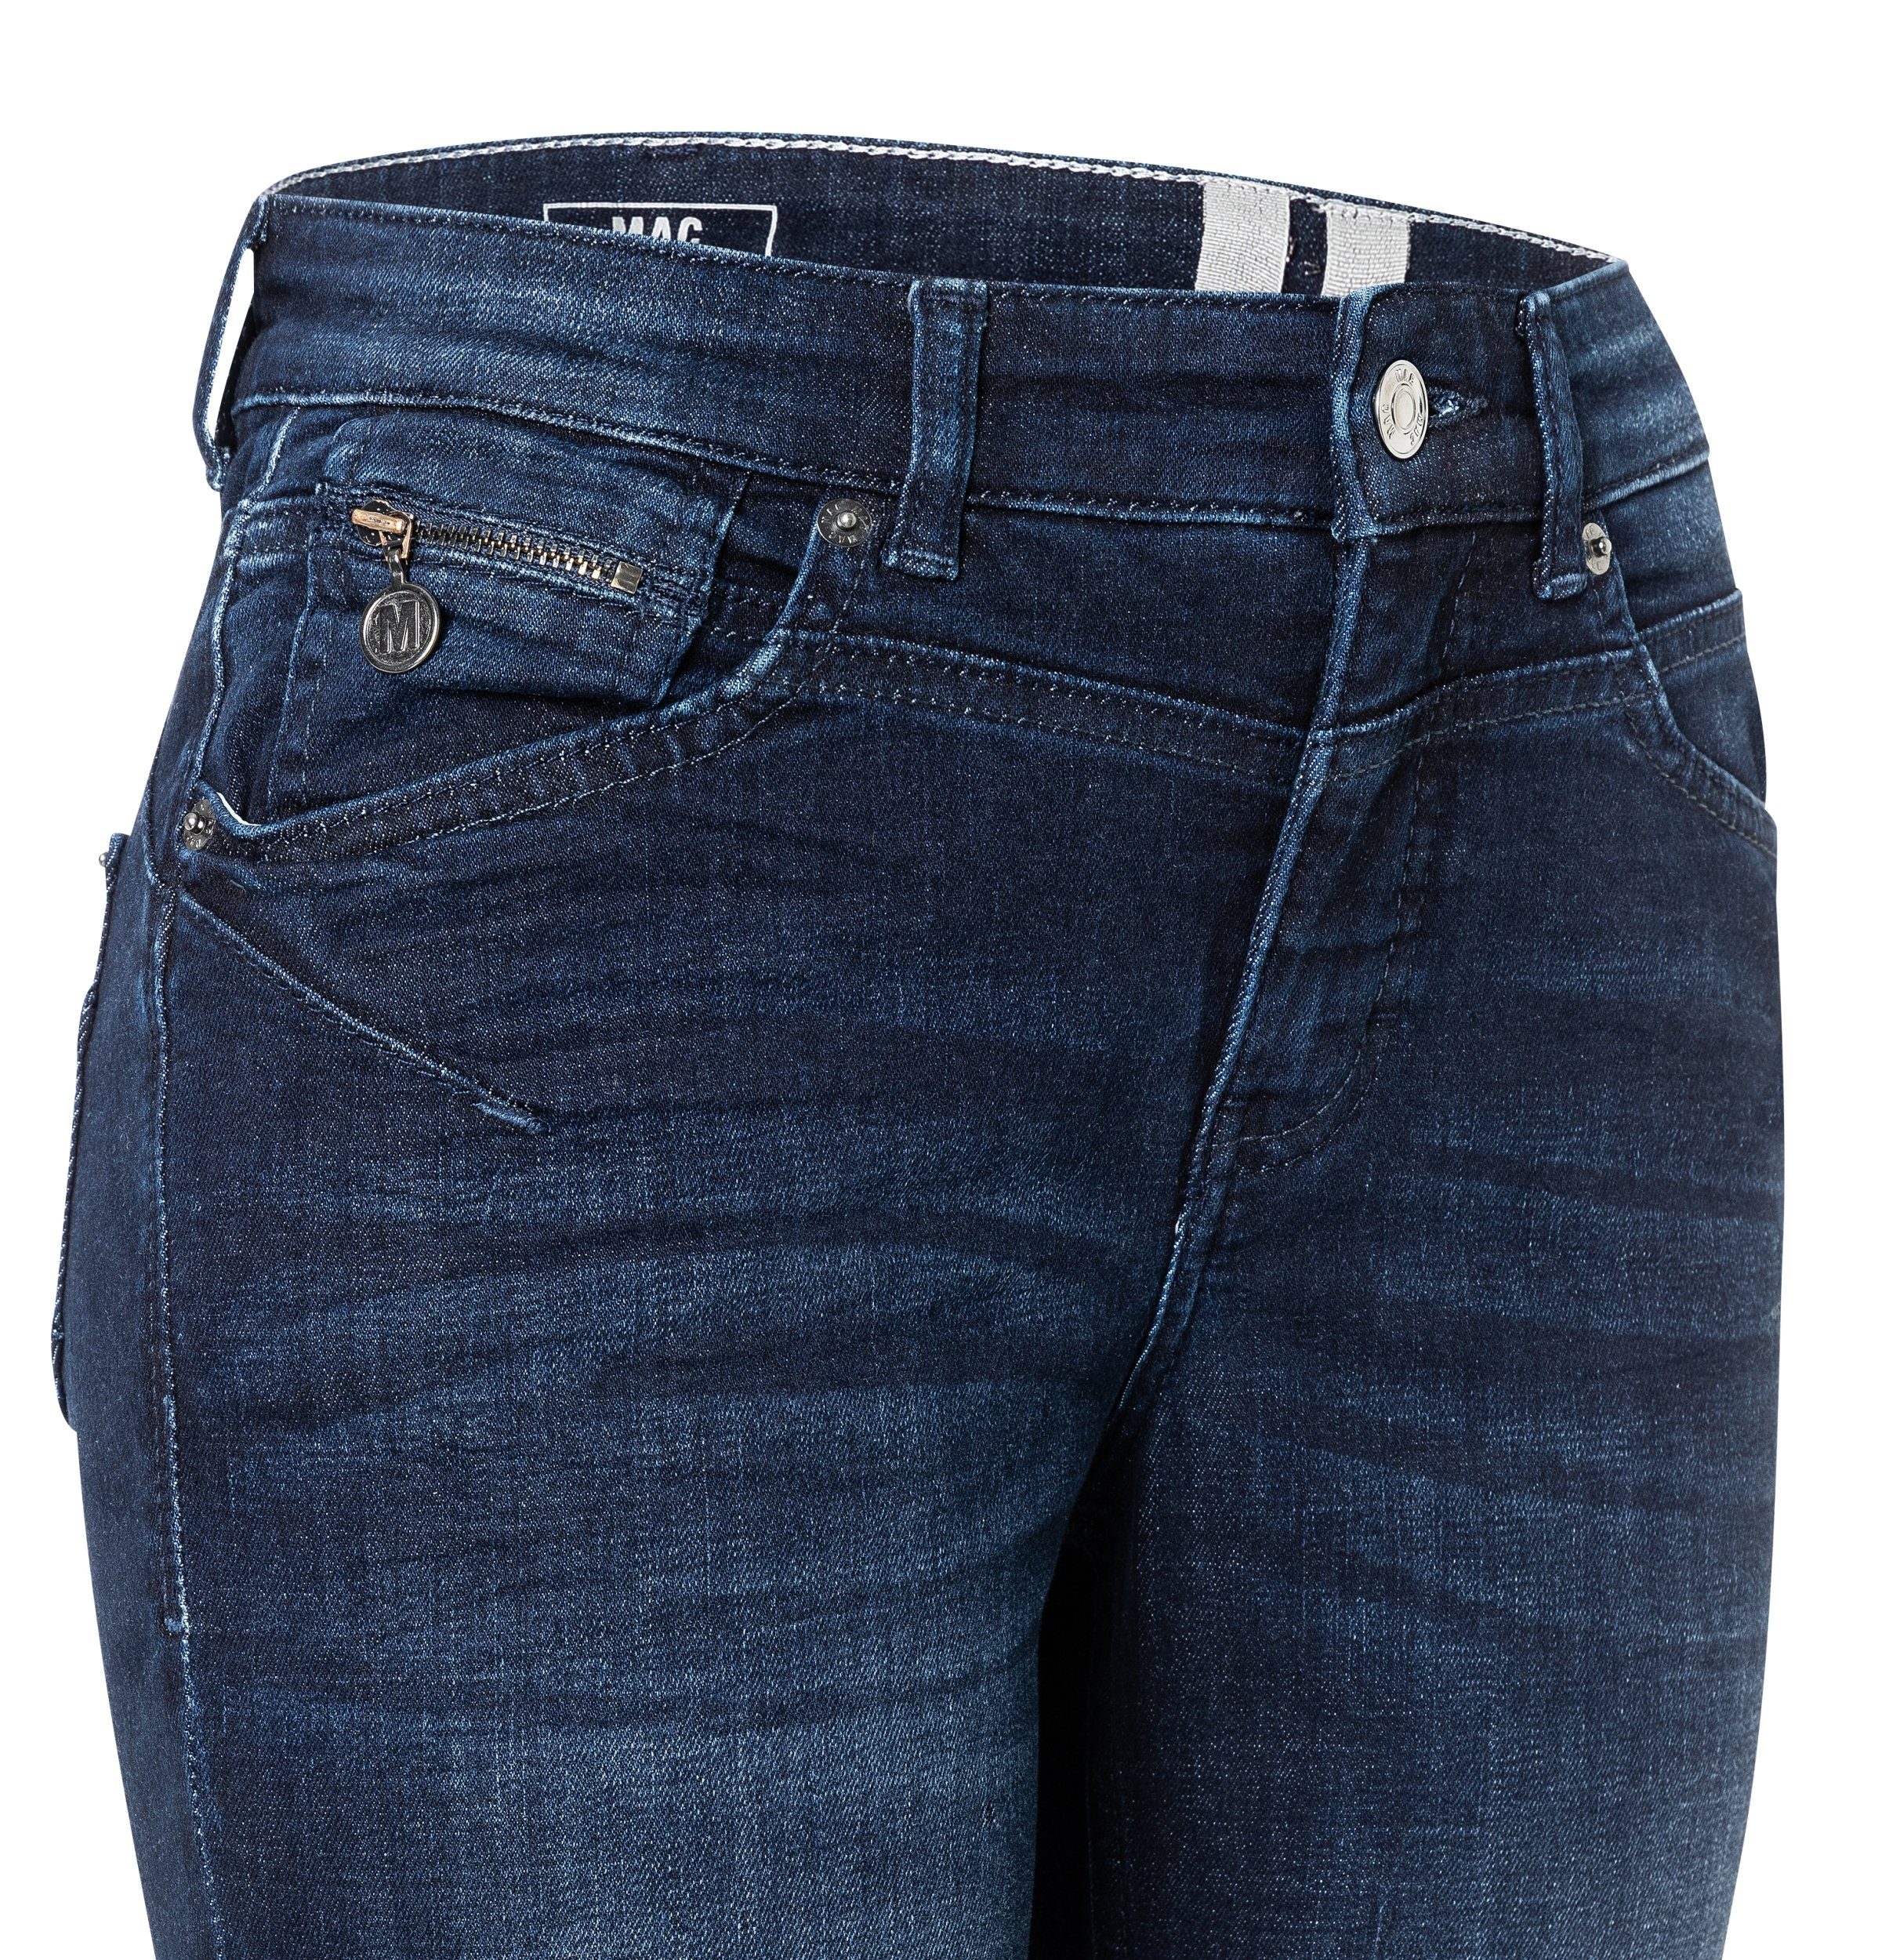 denim JEANS SLIM, - MAC Light RICH authentic 5-Pocket-Jeans